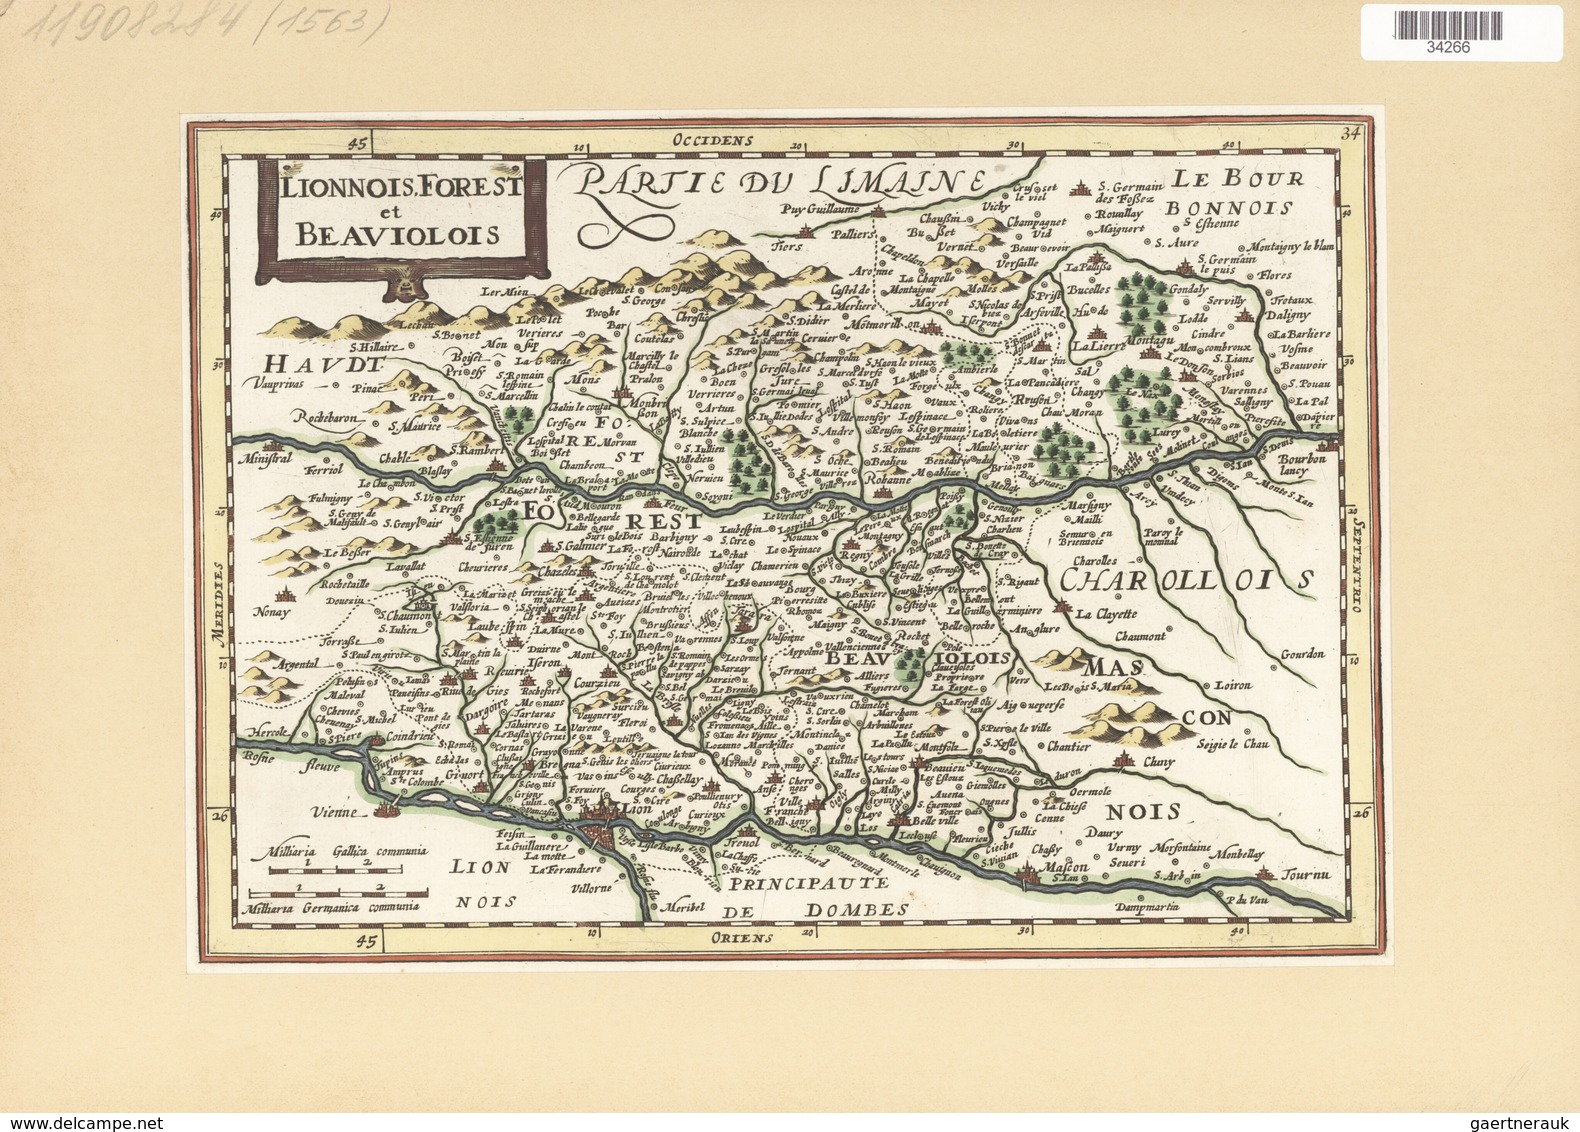 Landkarten Und Stiche: 1834. Lionnois Forest Et Beaviolois From The Mercator Atlas Minor Ca 1648, La - Géographie